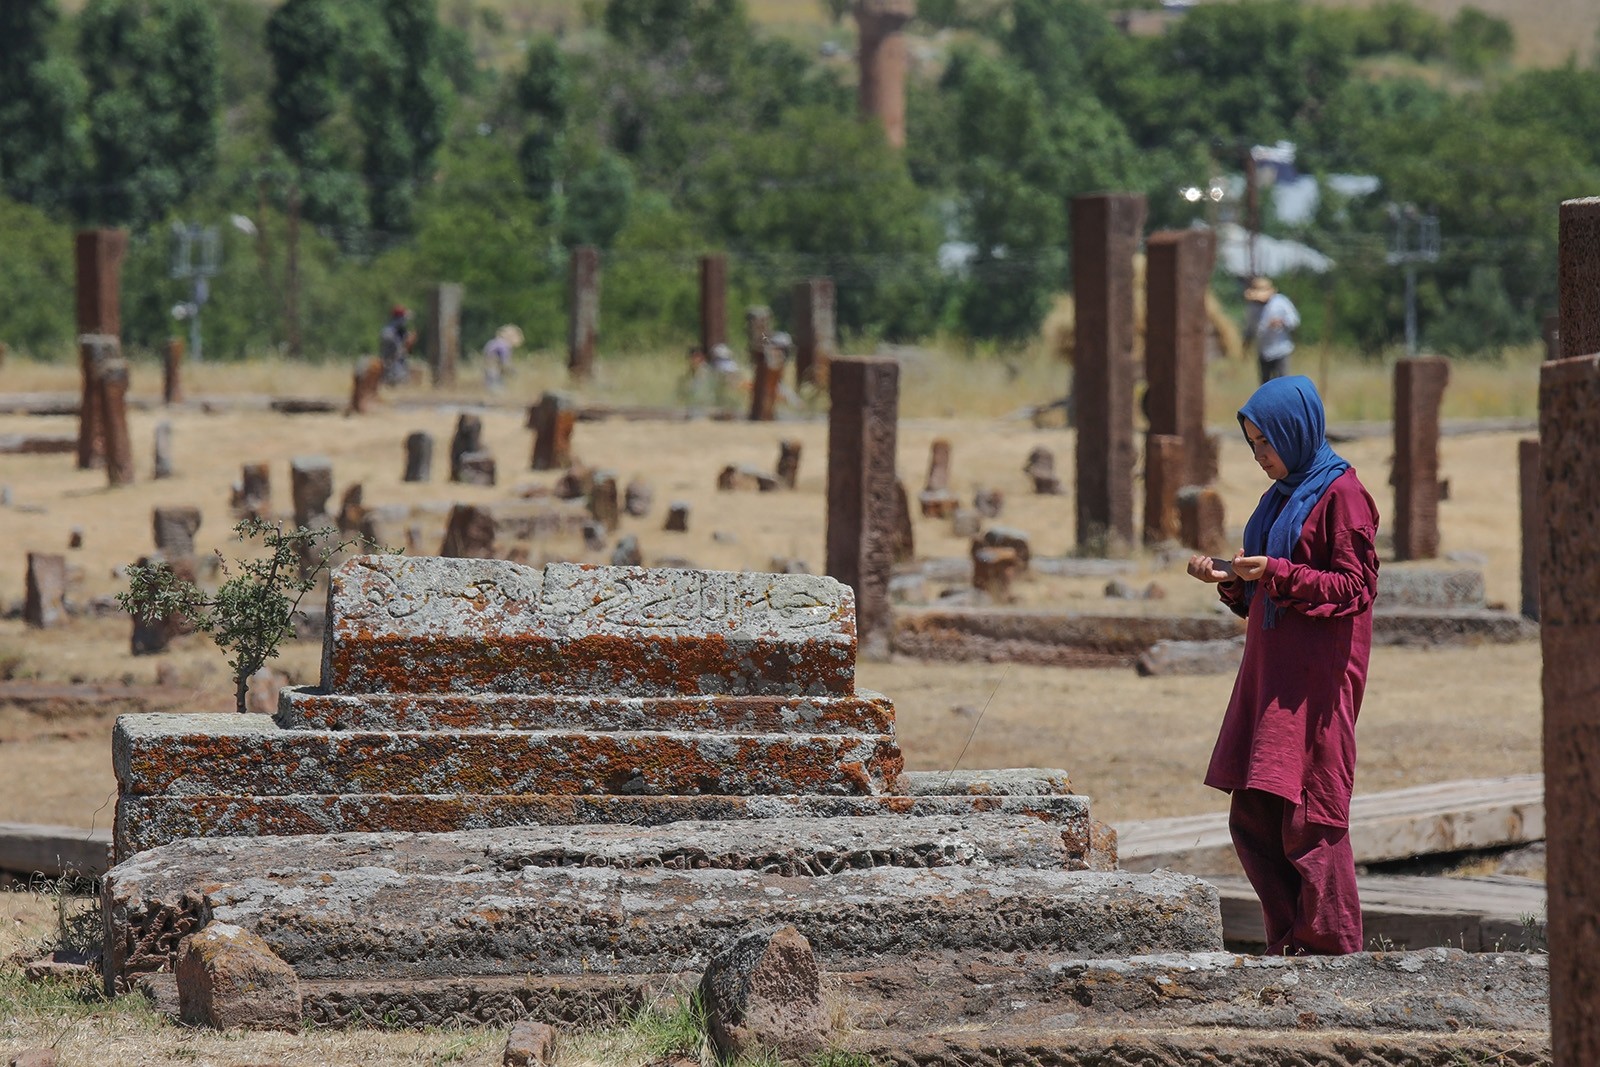 Древние гробницы Ахлата — крупнейшее тюрко-мусульманское кладбище в мире